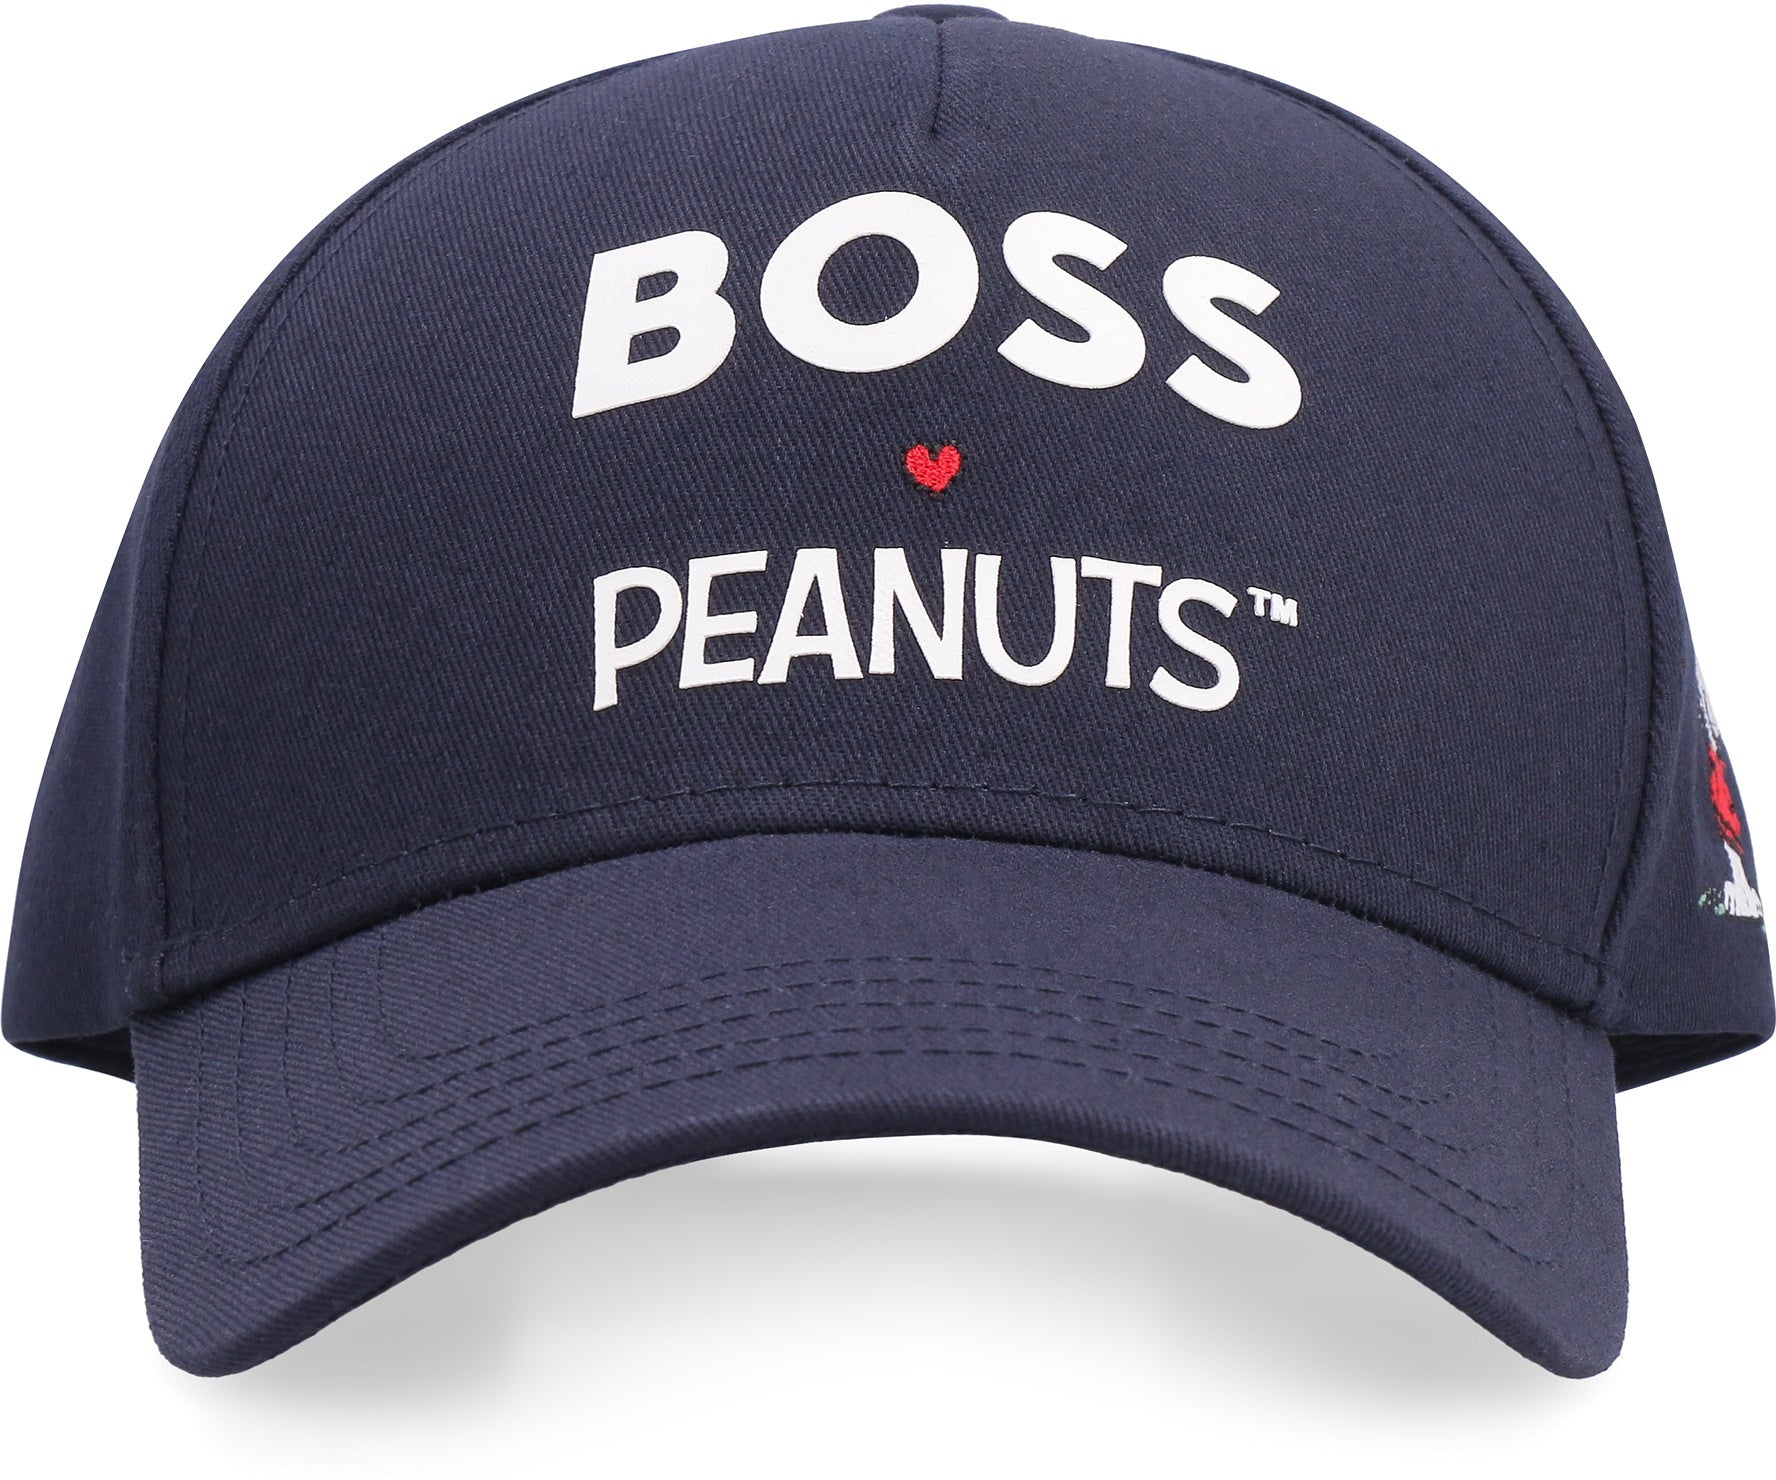 BOSS - BOSS baseball Printed cap x - Corner - The blue PEANUTS